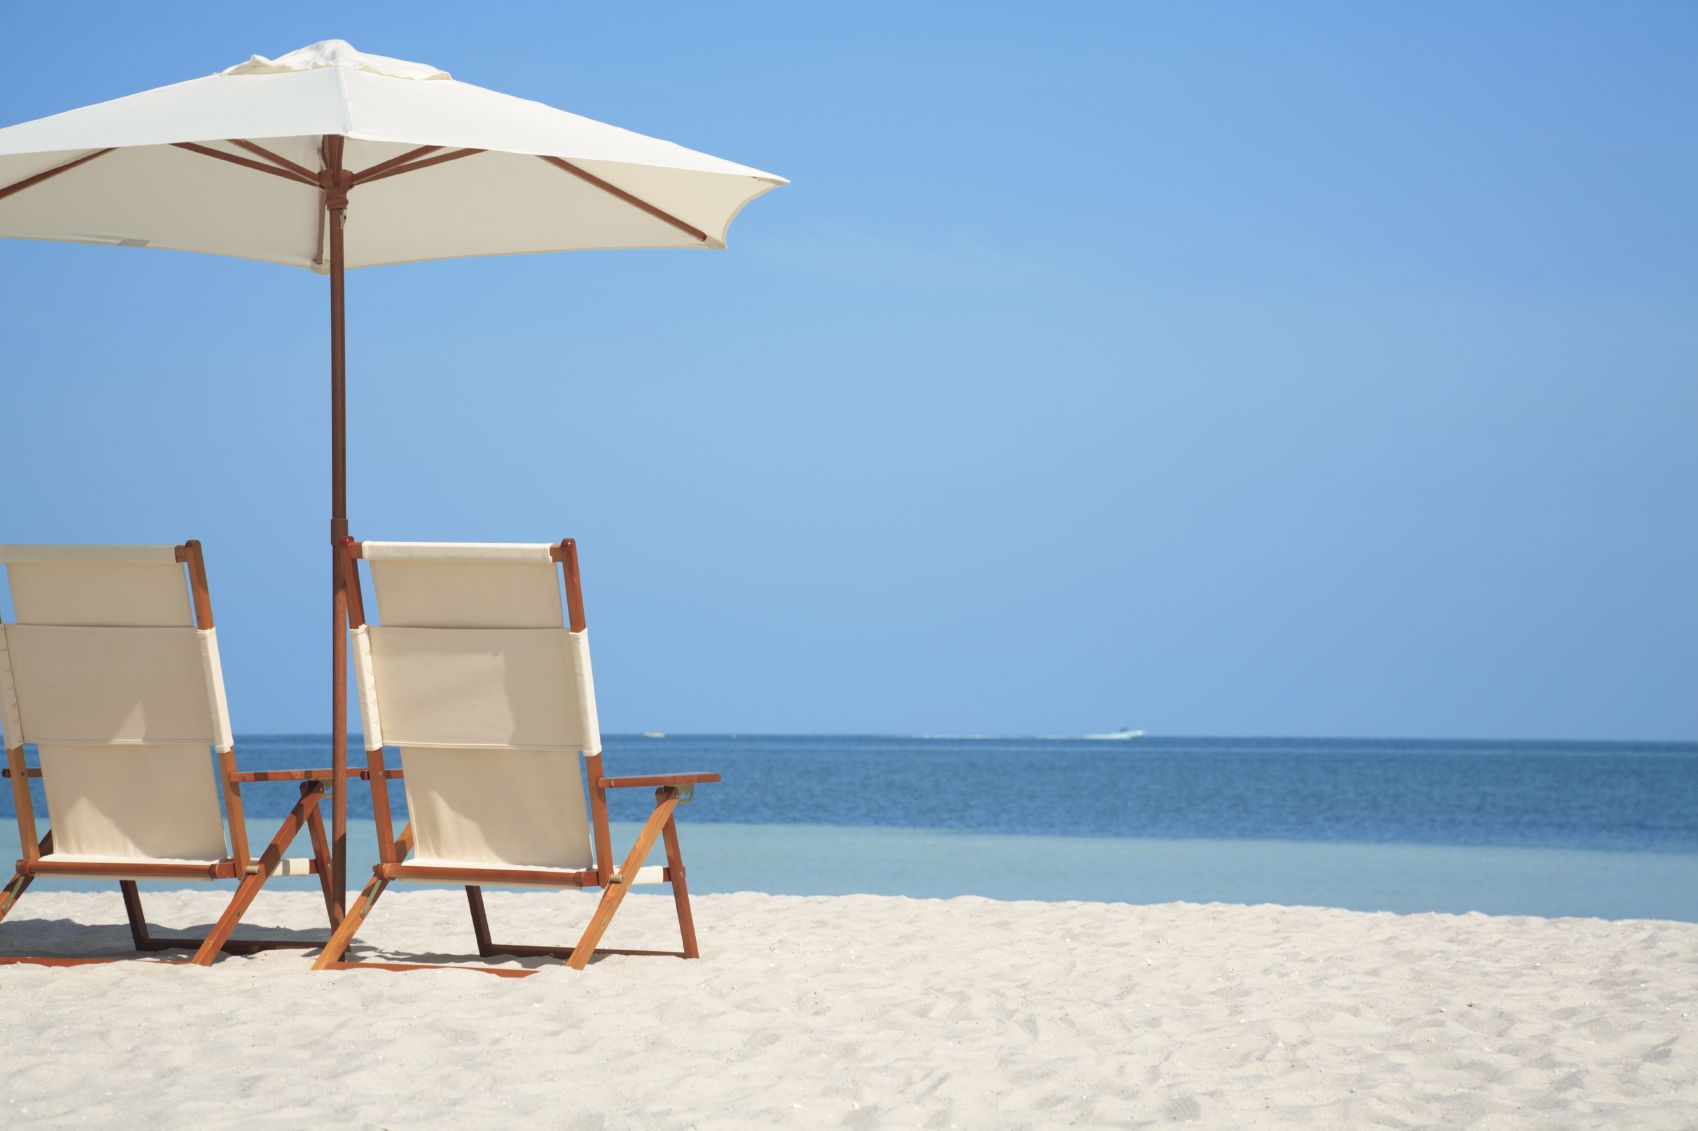 beach+chair | beach chairs and umbrella on tropical beach | Beach ...